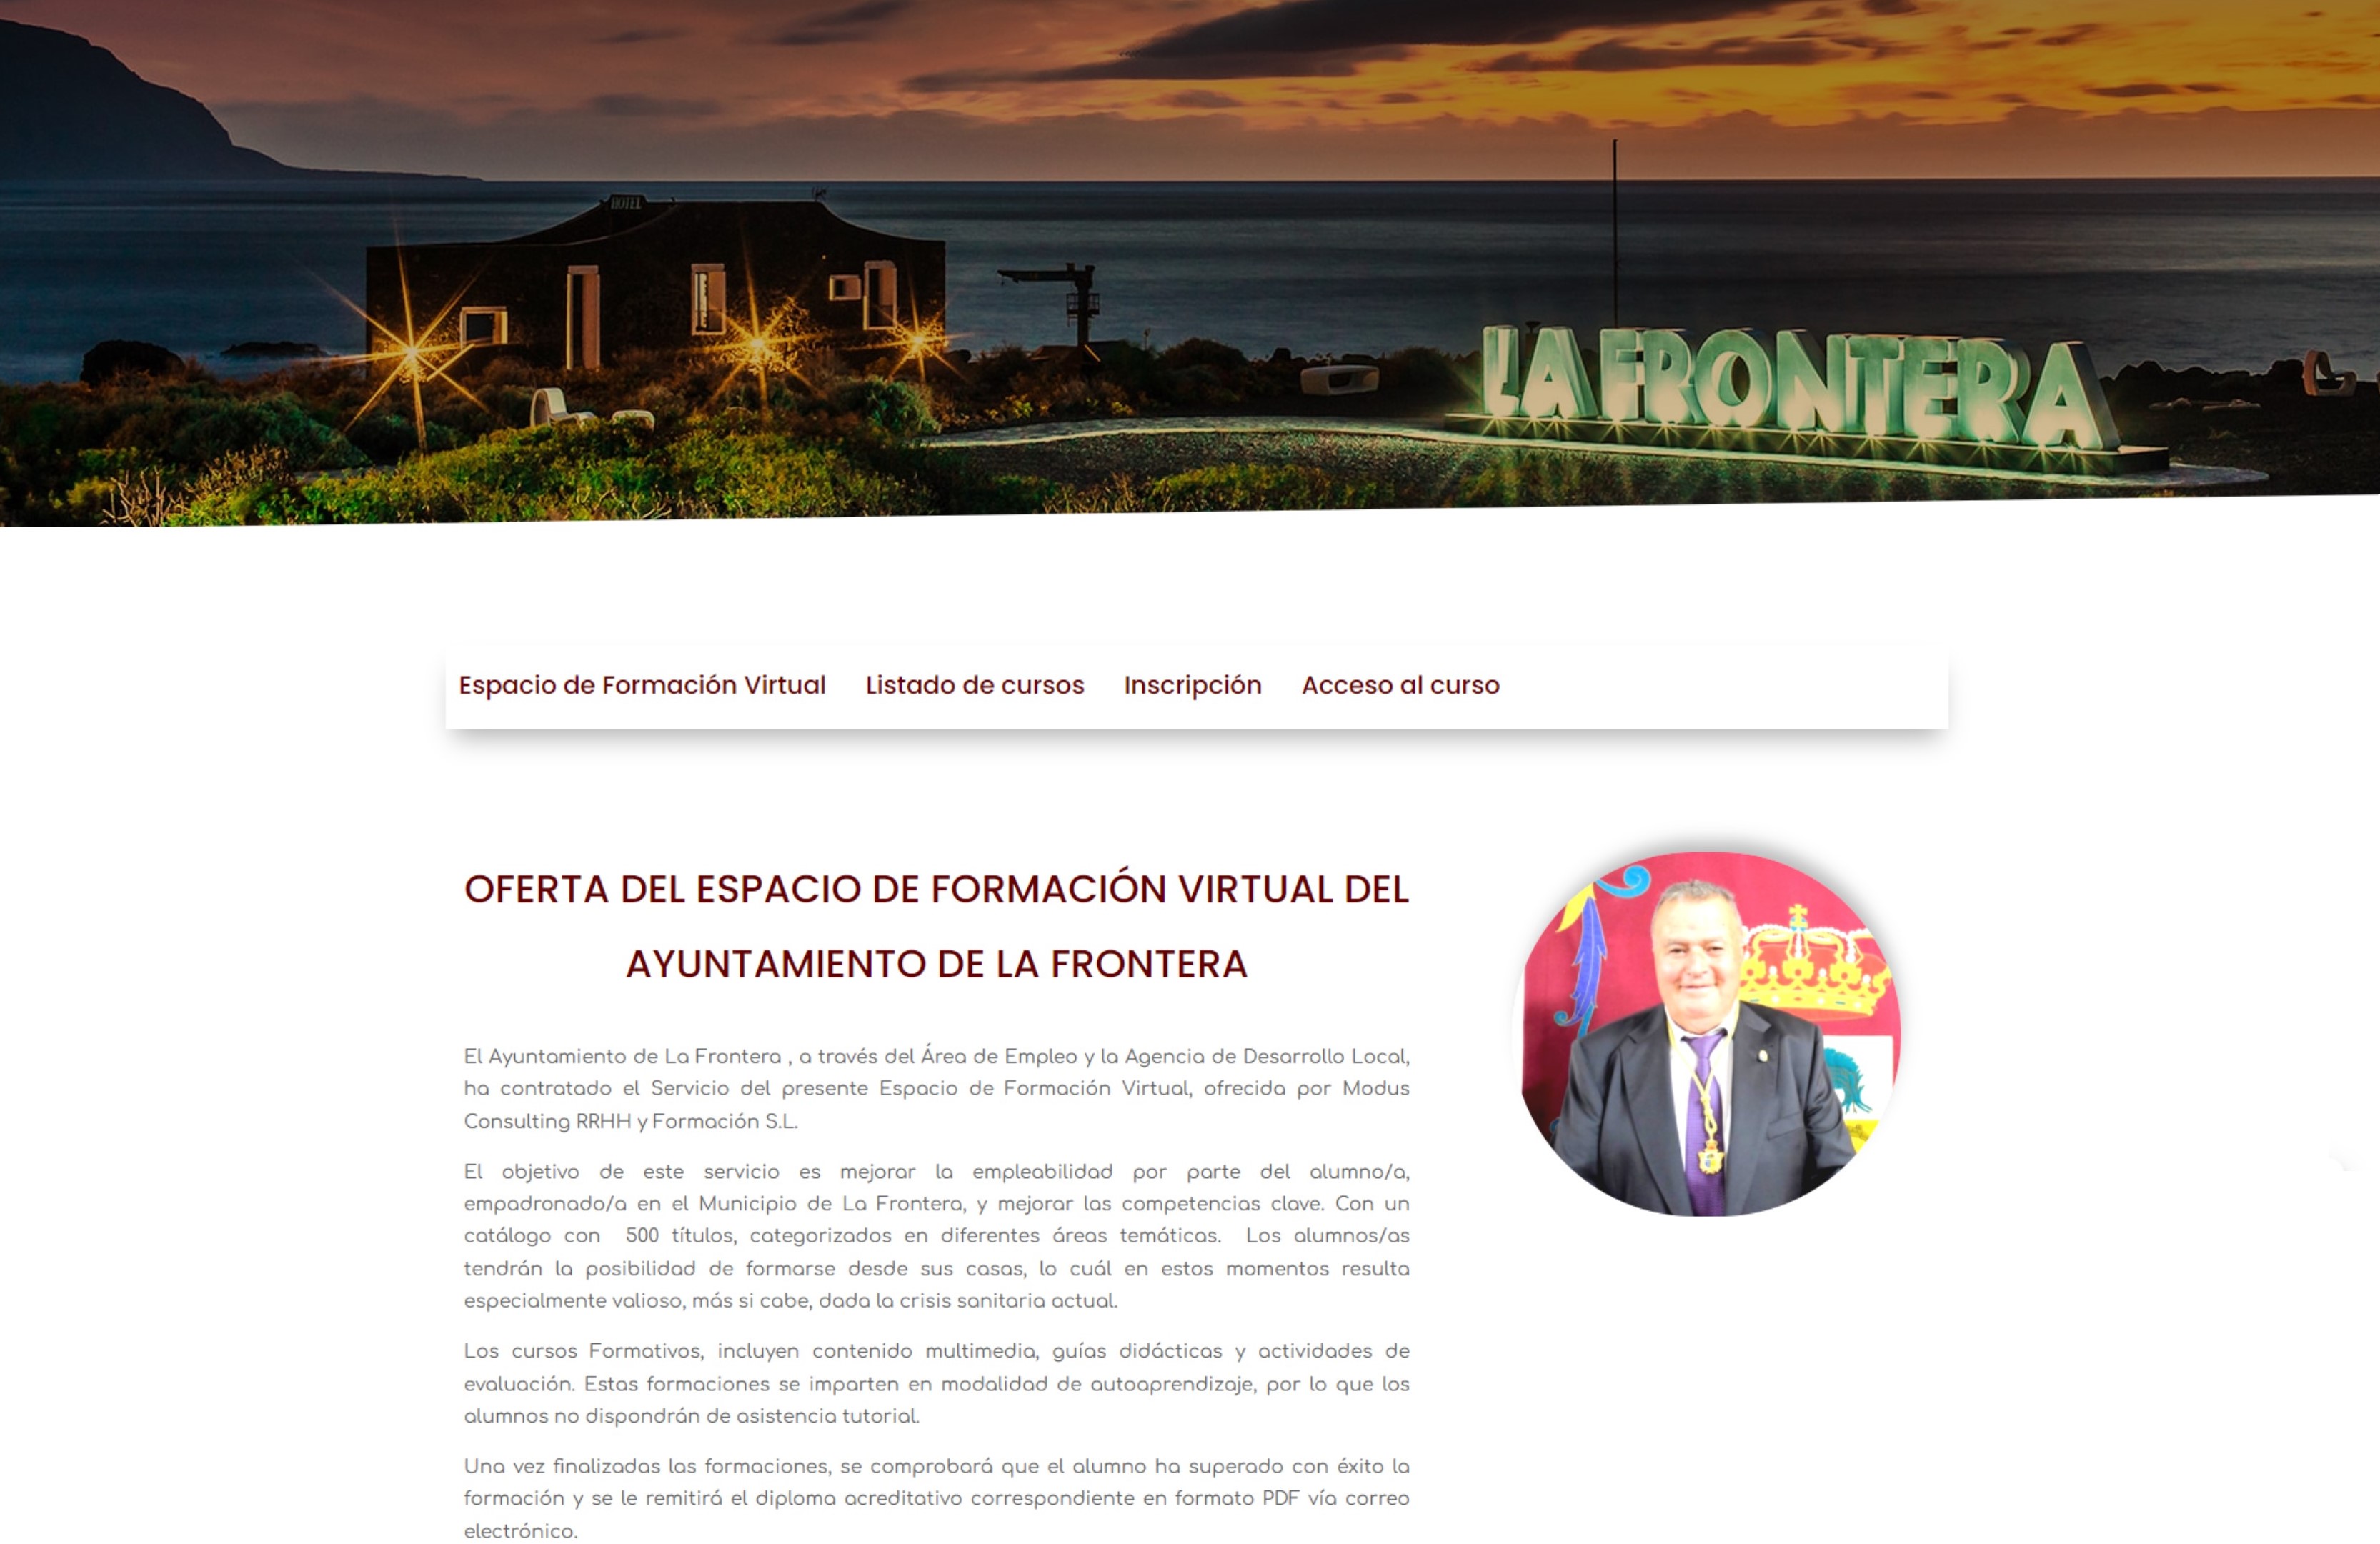 El Ayuntamiento de La Frontera hace balance de la participación en la plataforma educativa 